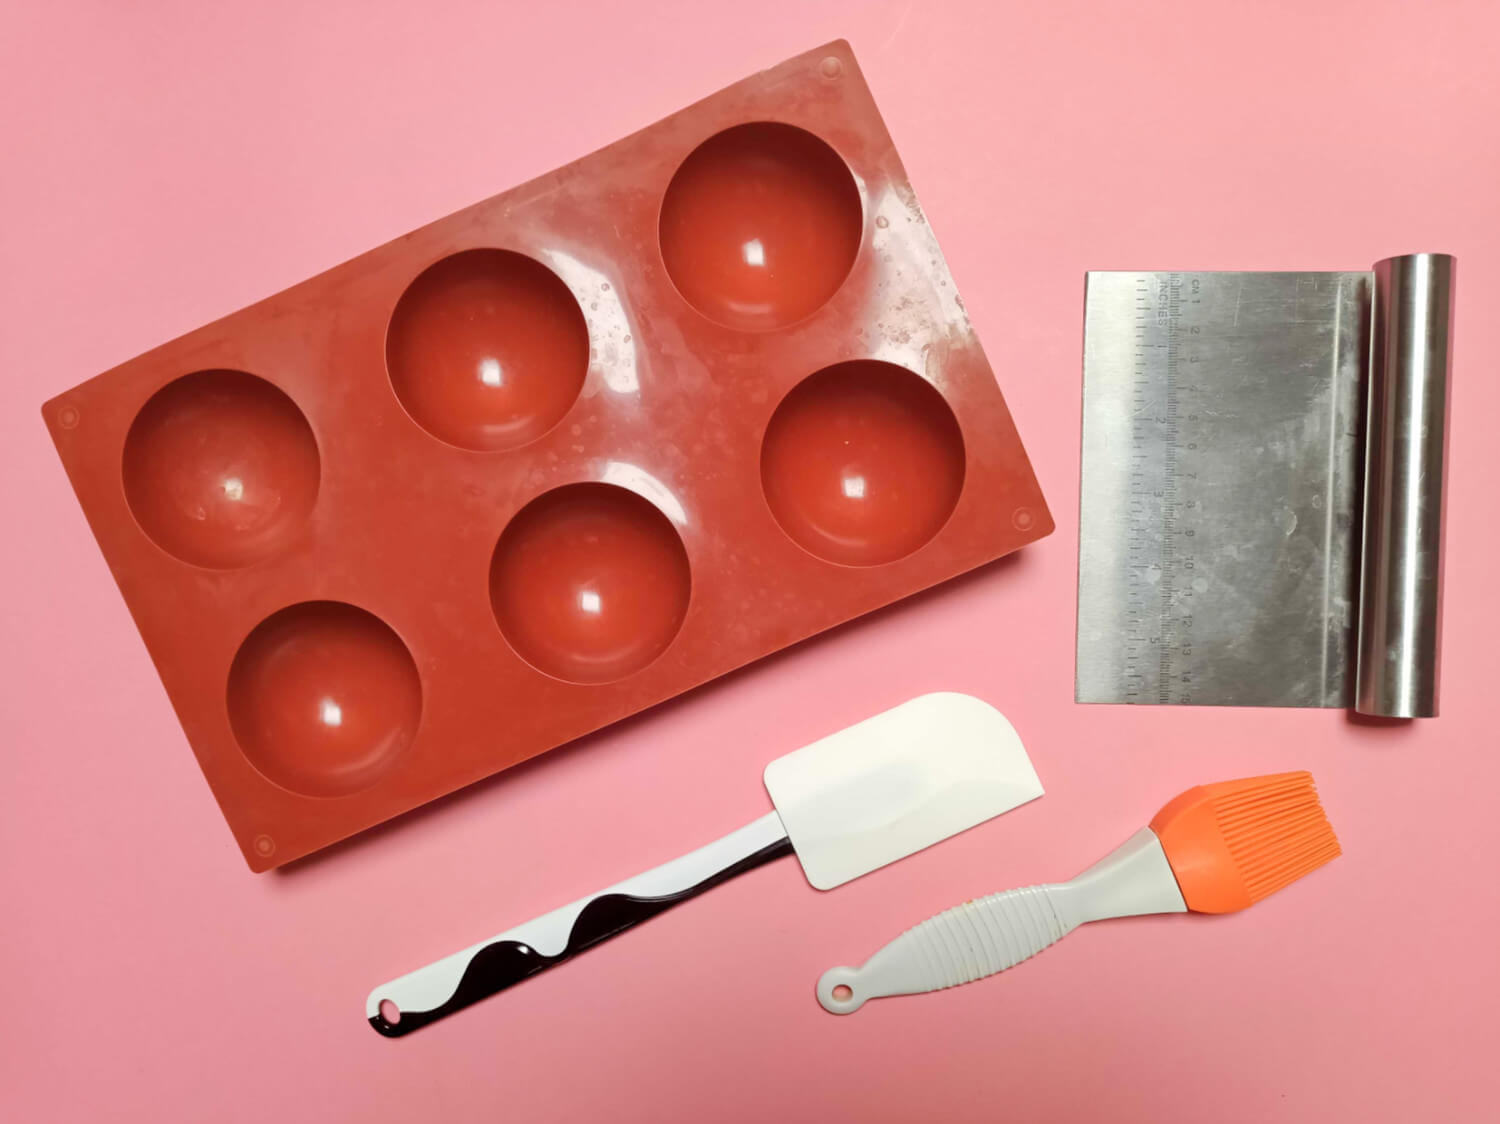 Czekoladowe bomby - kule z kakao i piankami (Hot Chocolate Bombs) potrzebne narzędzia, skrobka metalowa, silikonowa szpatułka, silikonowy pędzel, silikonowa forma na duże półkule